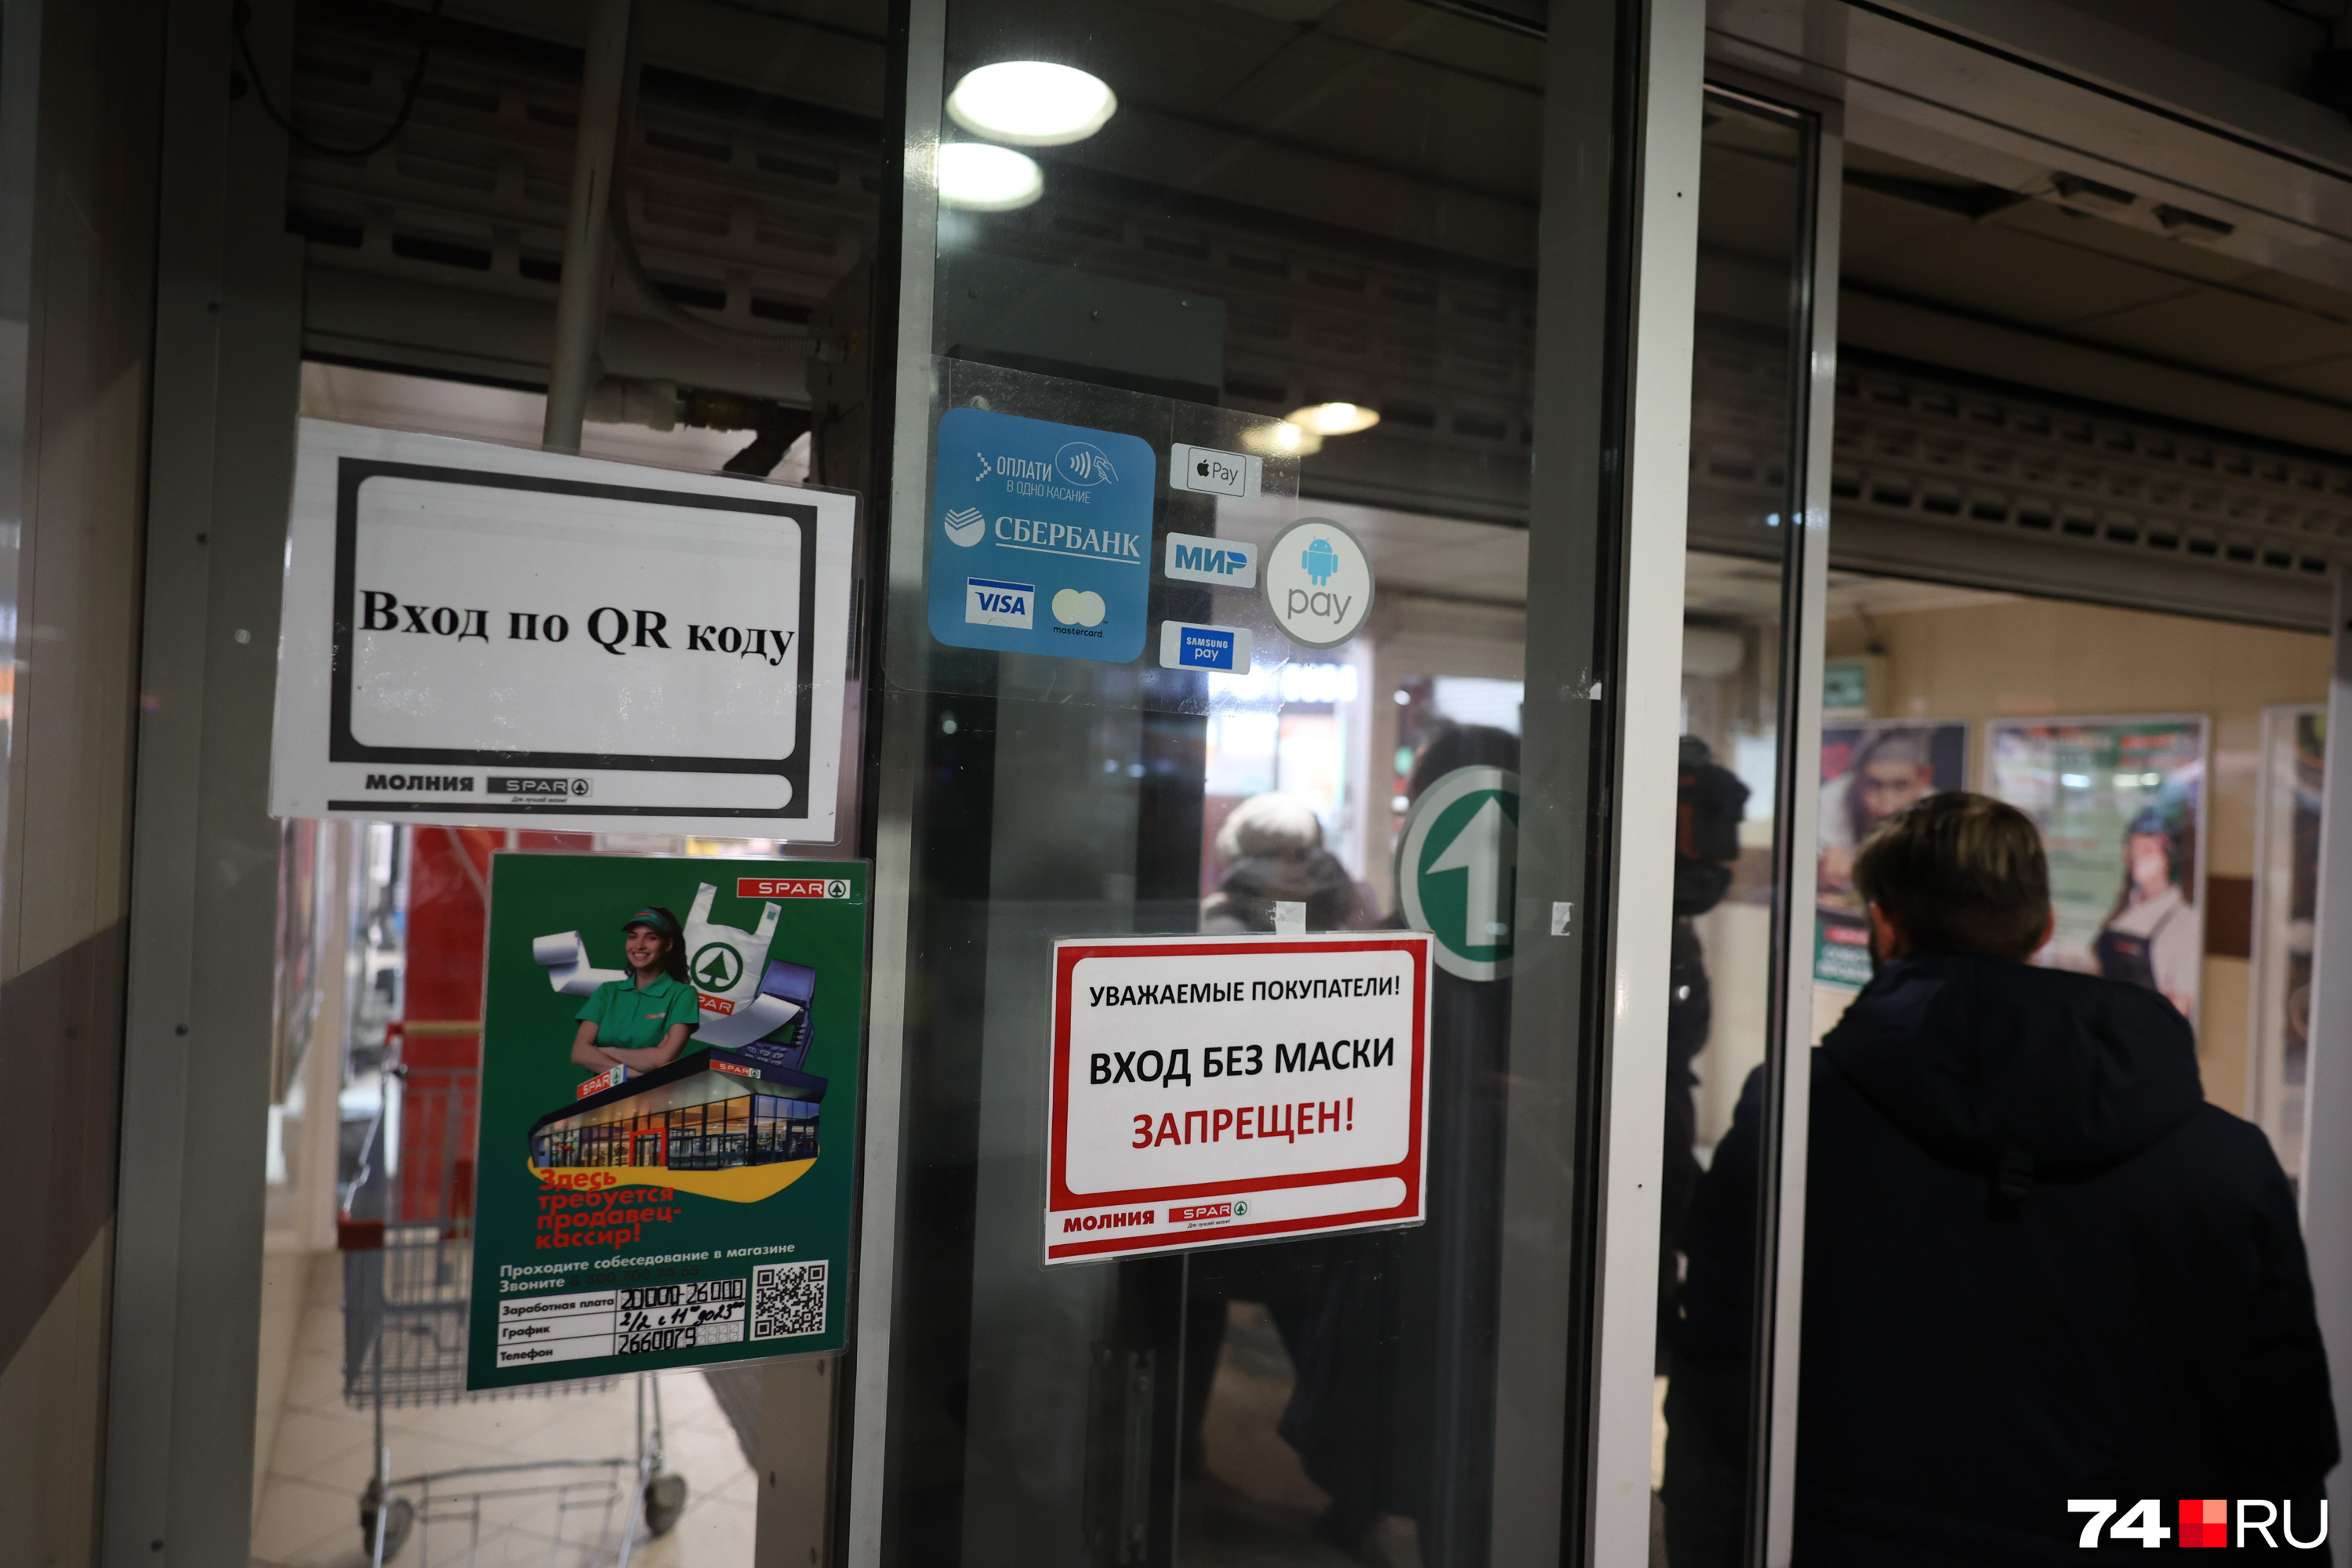 Журналисты предложили проверить не только крупные ТК, но и магазин SPAR на Северо-Западе, где сами часто замечают, что на входах не проверяют QR-коды